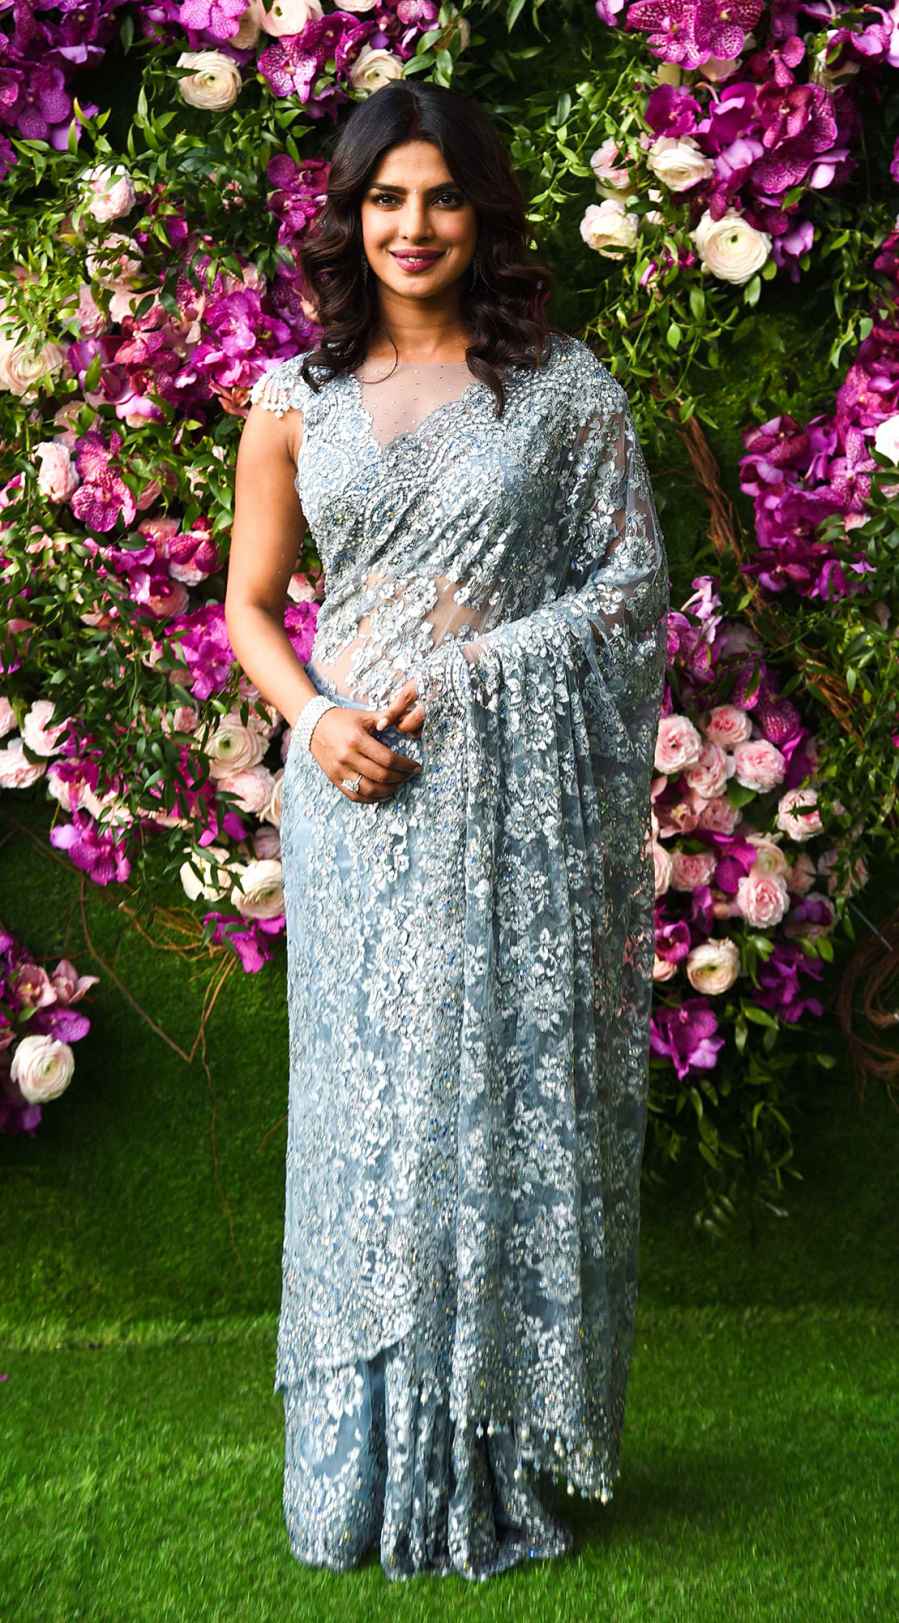 Priyanka Chopra Mumbai lace dress